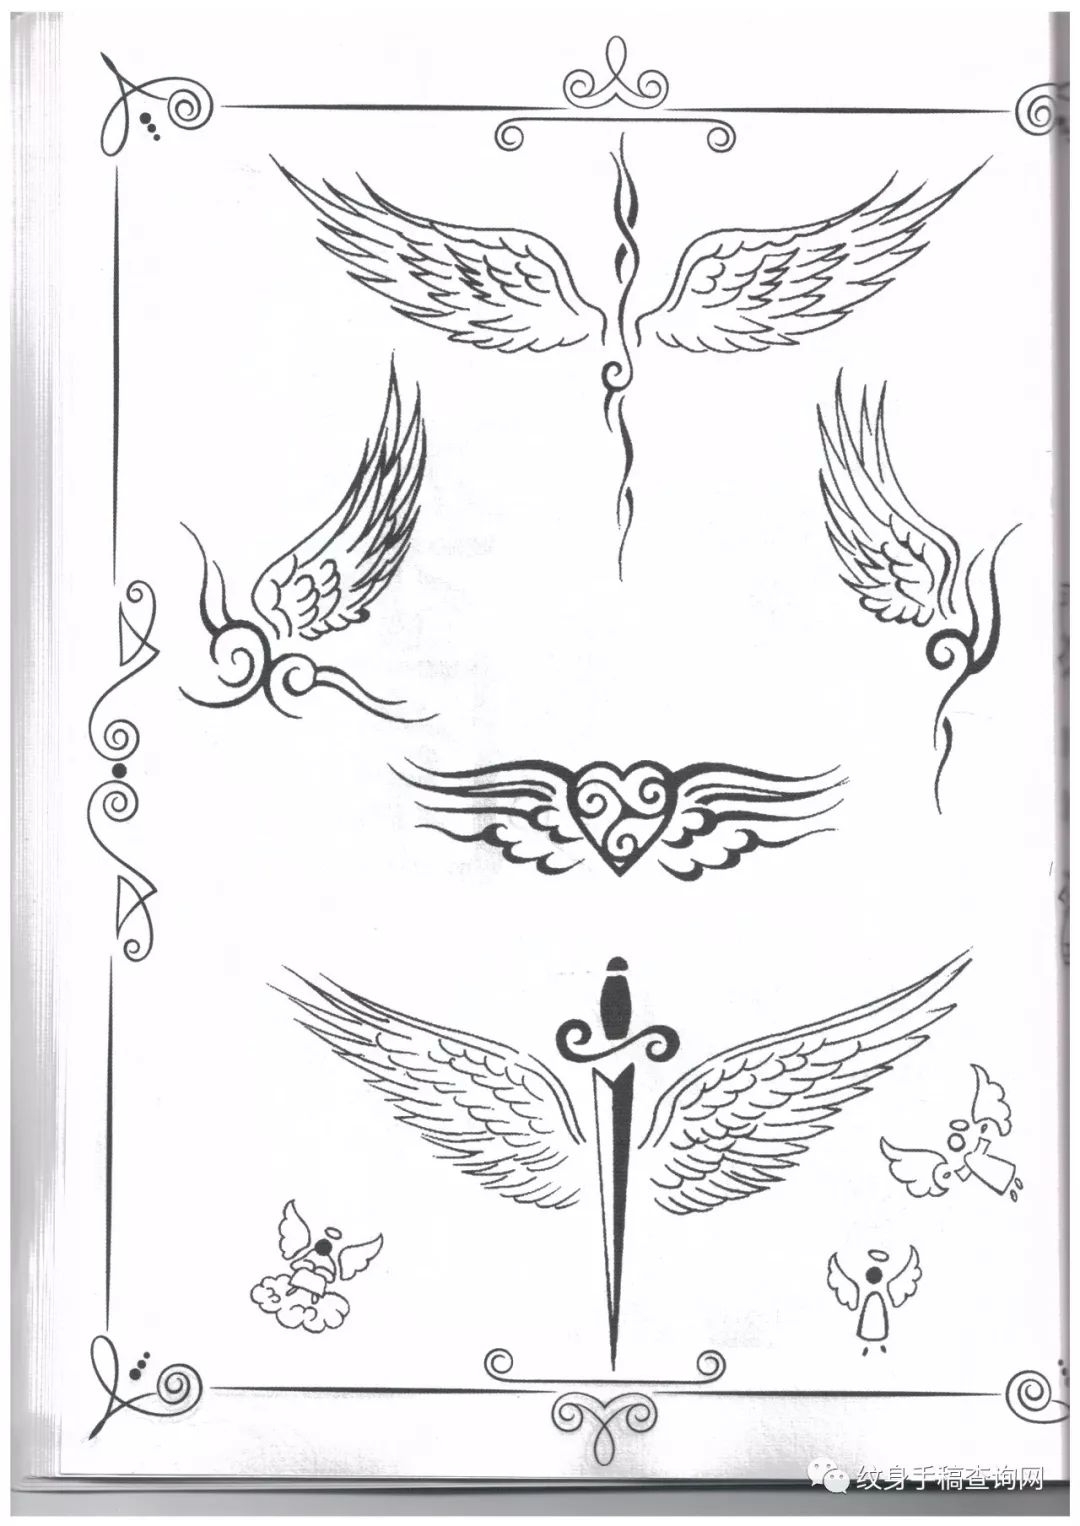 欧美最全翅膀天使纹身手稿图片大全集合集